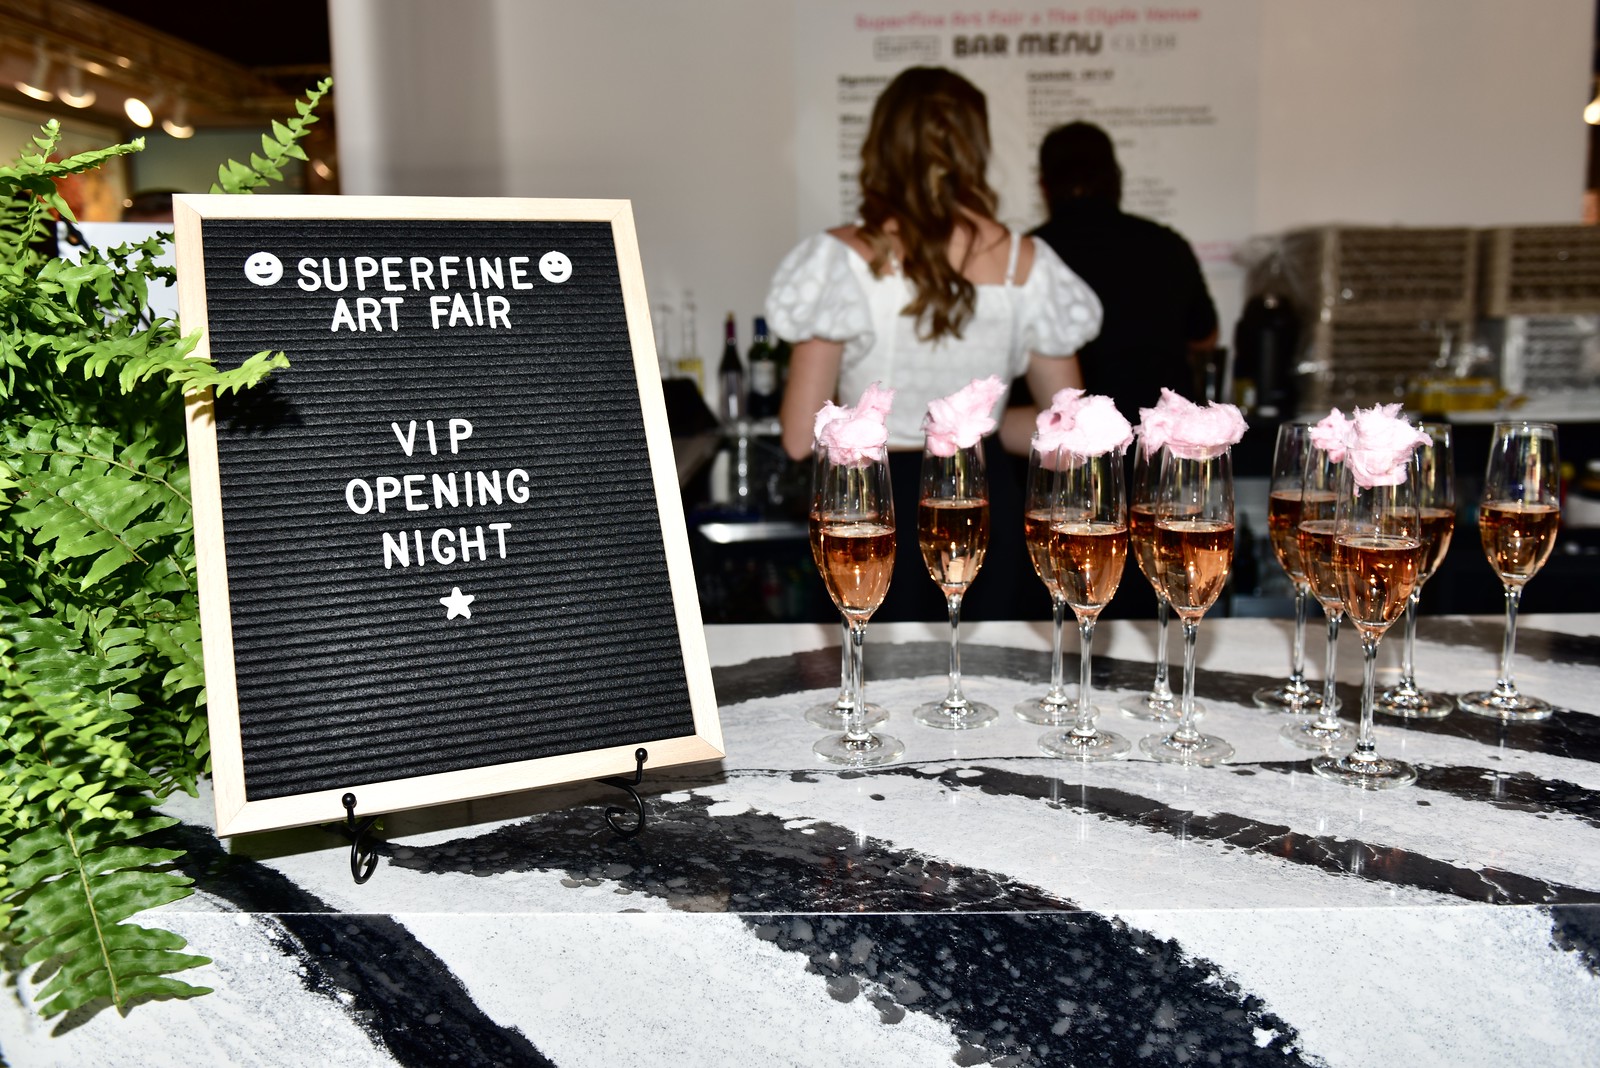 Superfine Art Fair VIP Opening Night